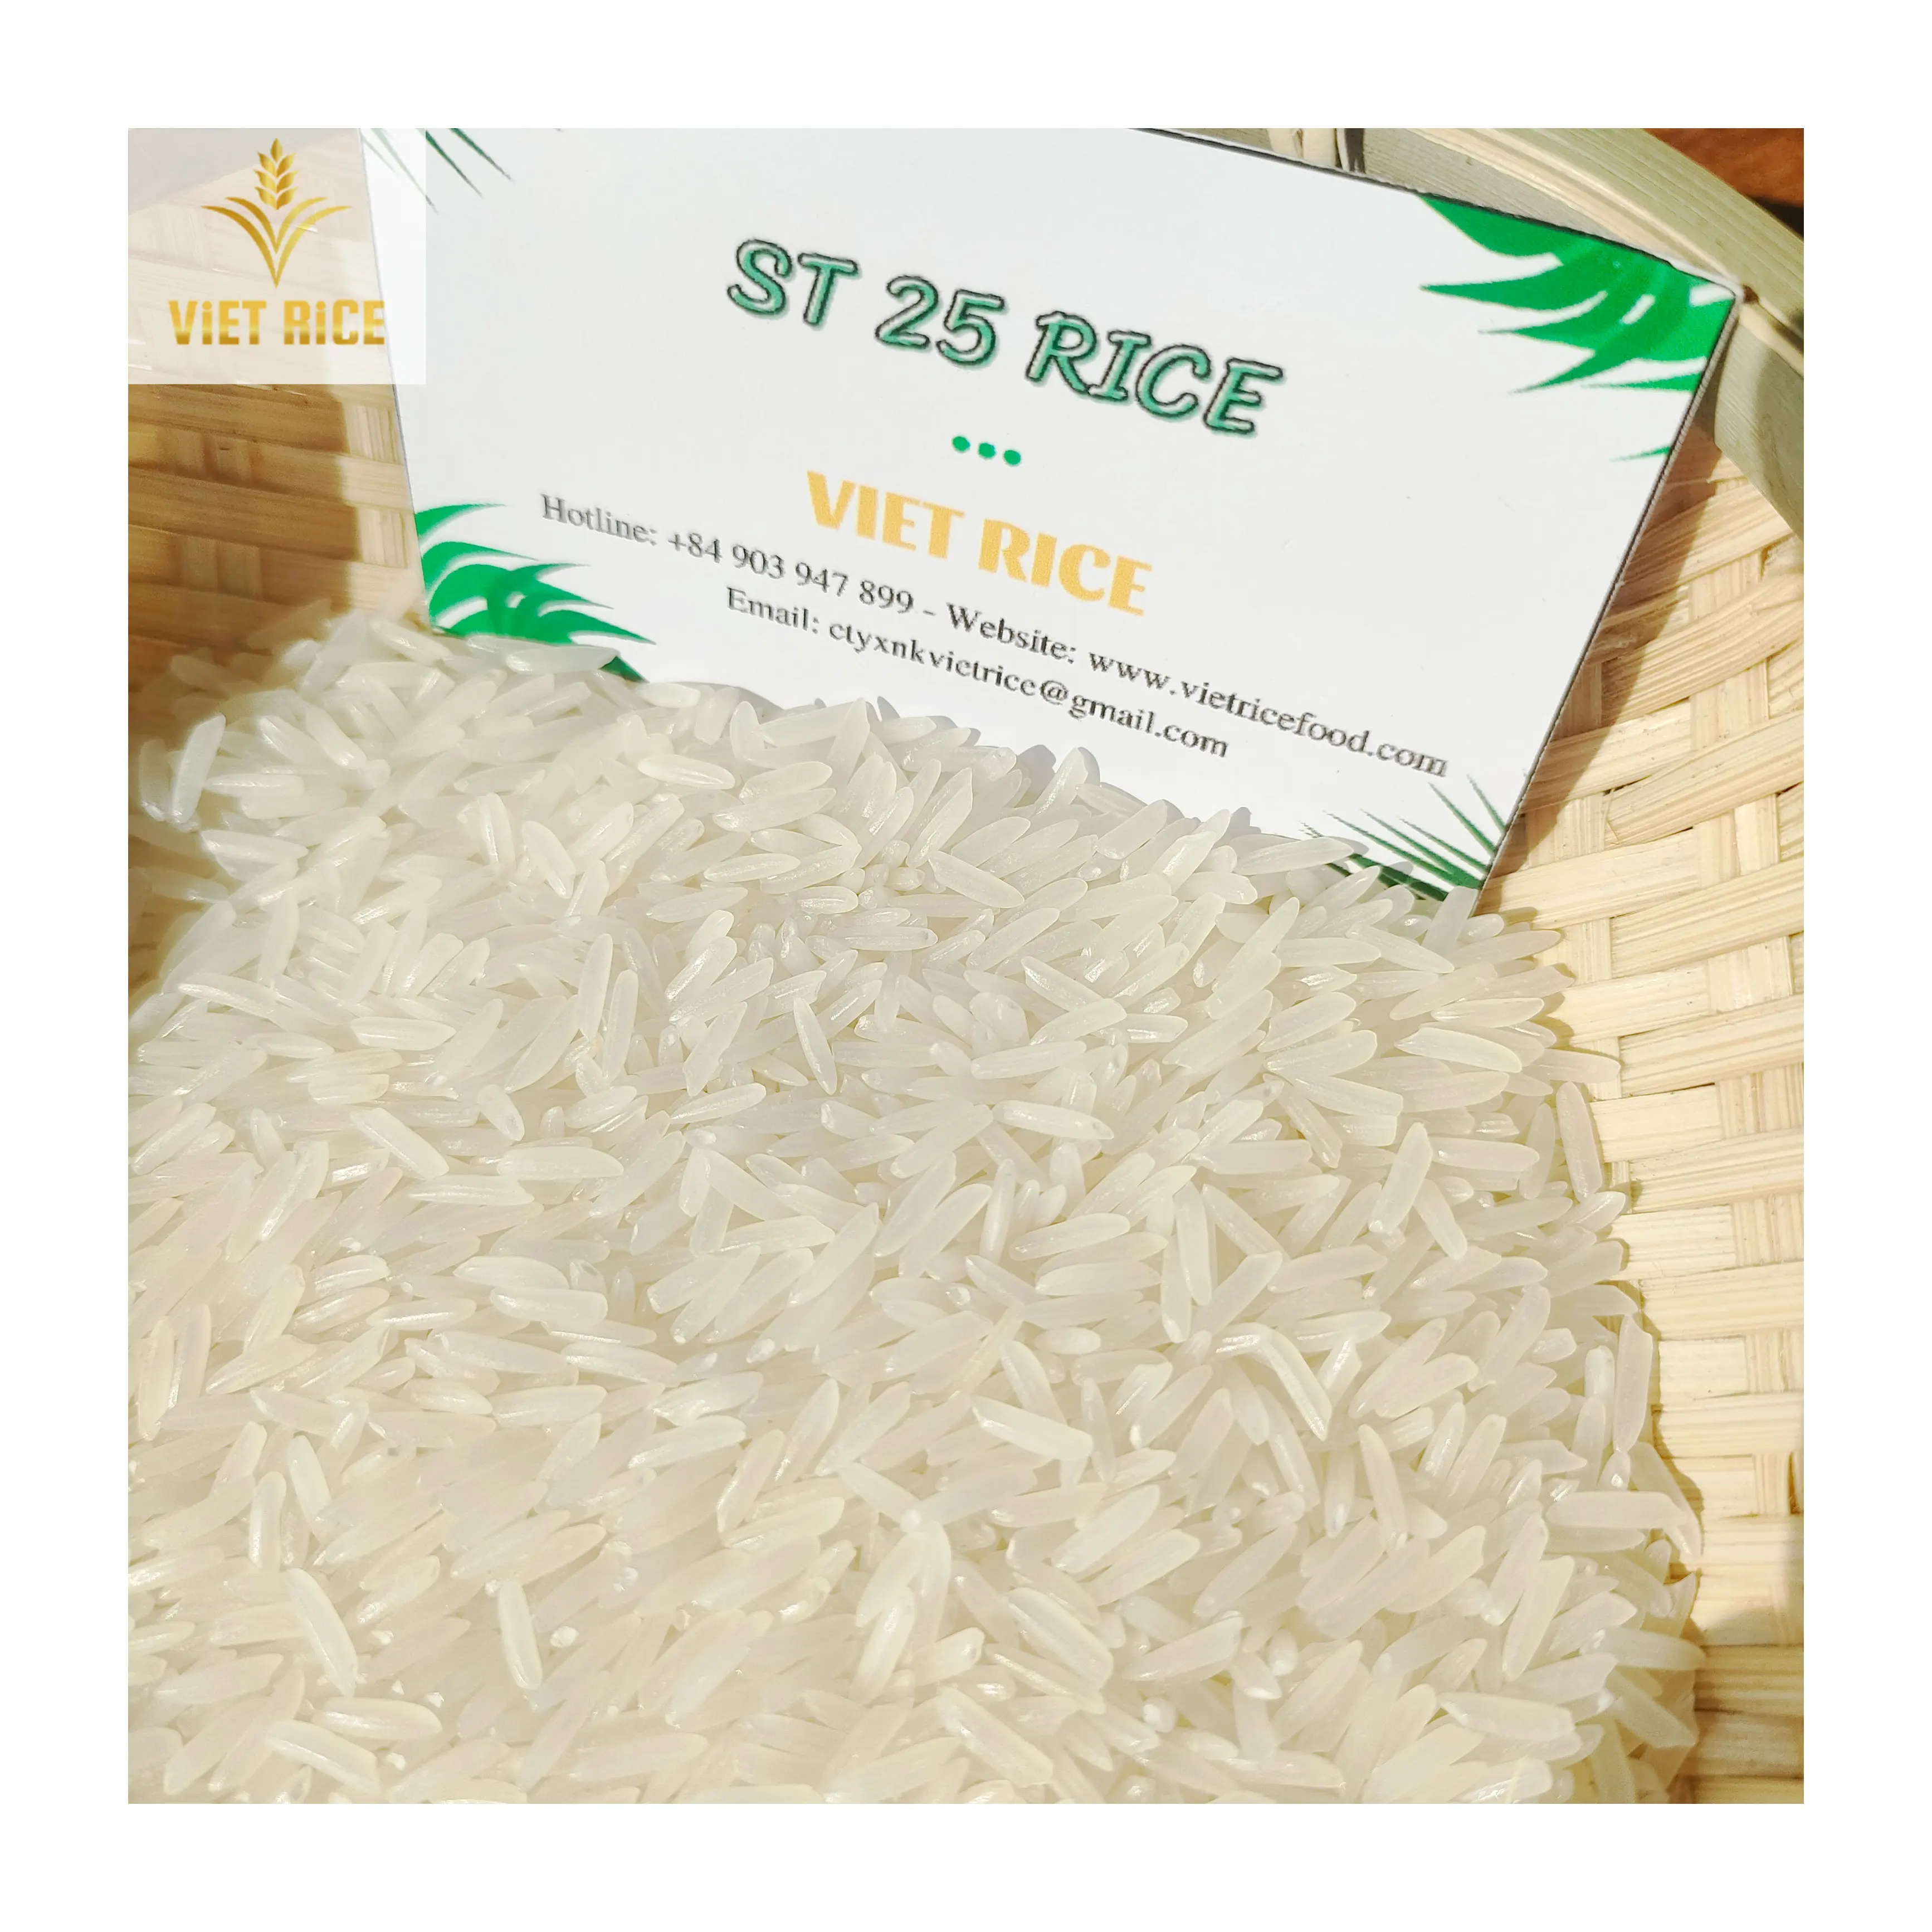 האיכות הטובה ביותר זול אורז ST25 אורז ארוך תבואה אורז עם סביר כבר חינם עבור כל לקוחות